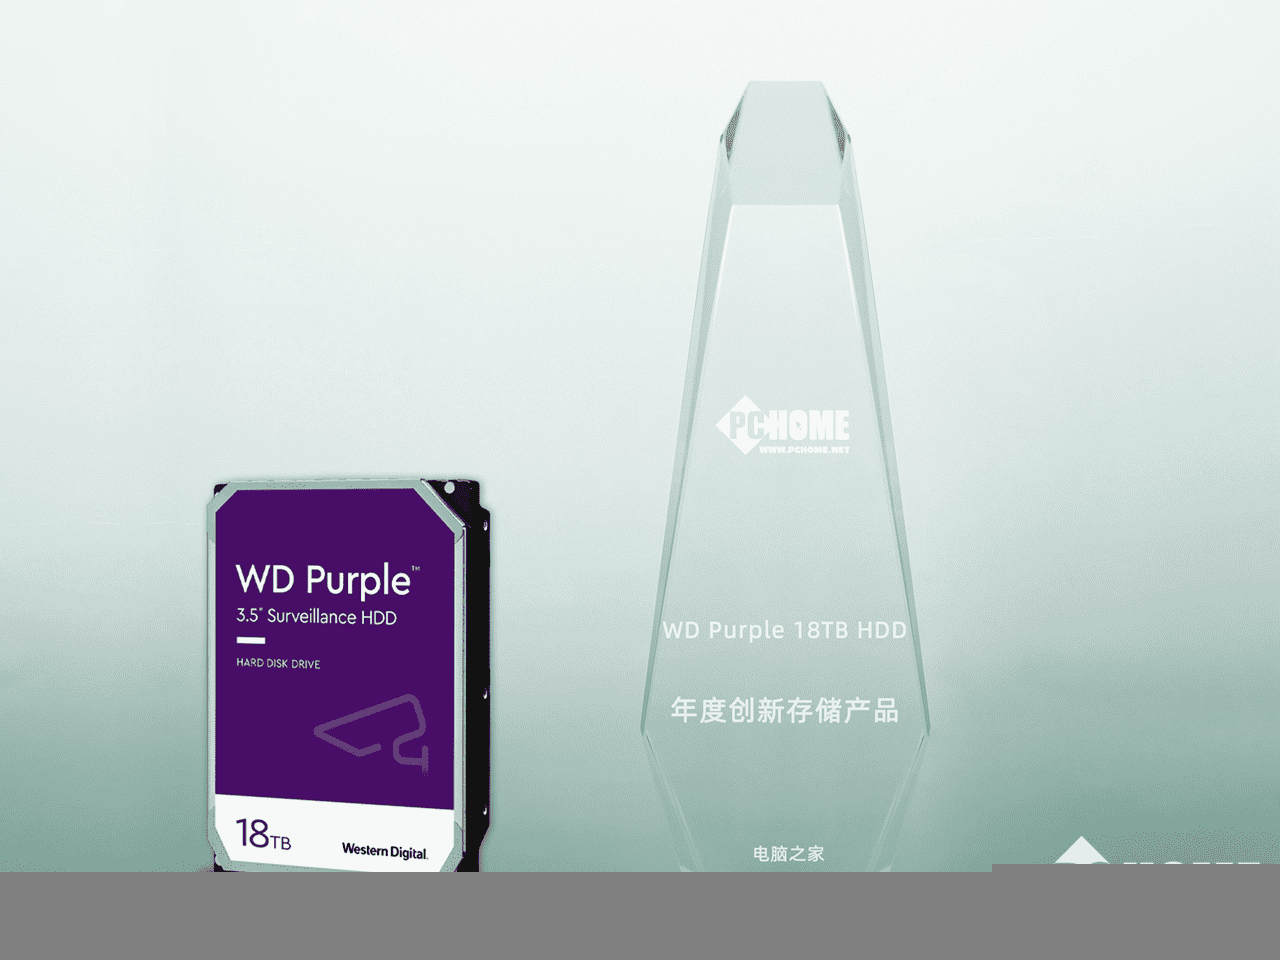 西数紫盘18TB硬盘荣获年度创新存储产品称号